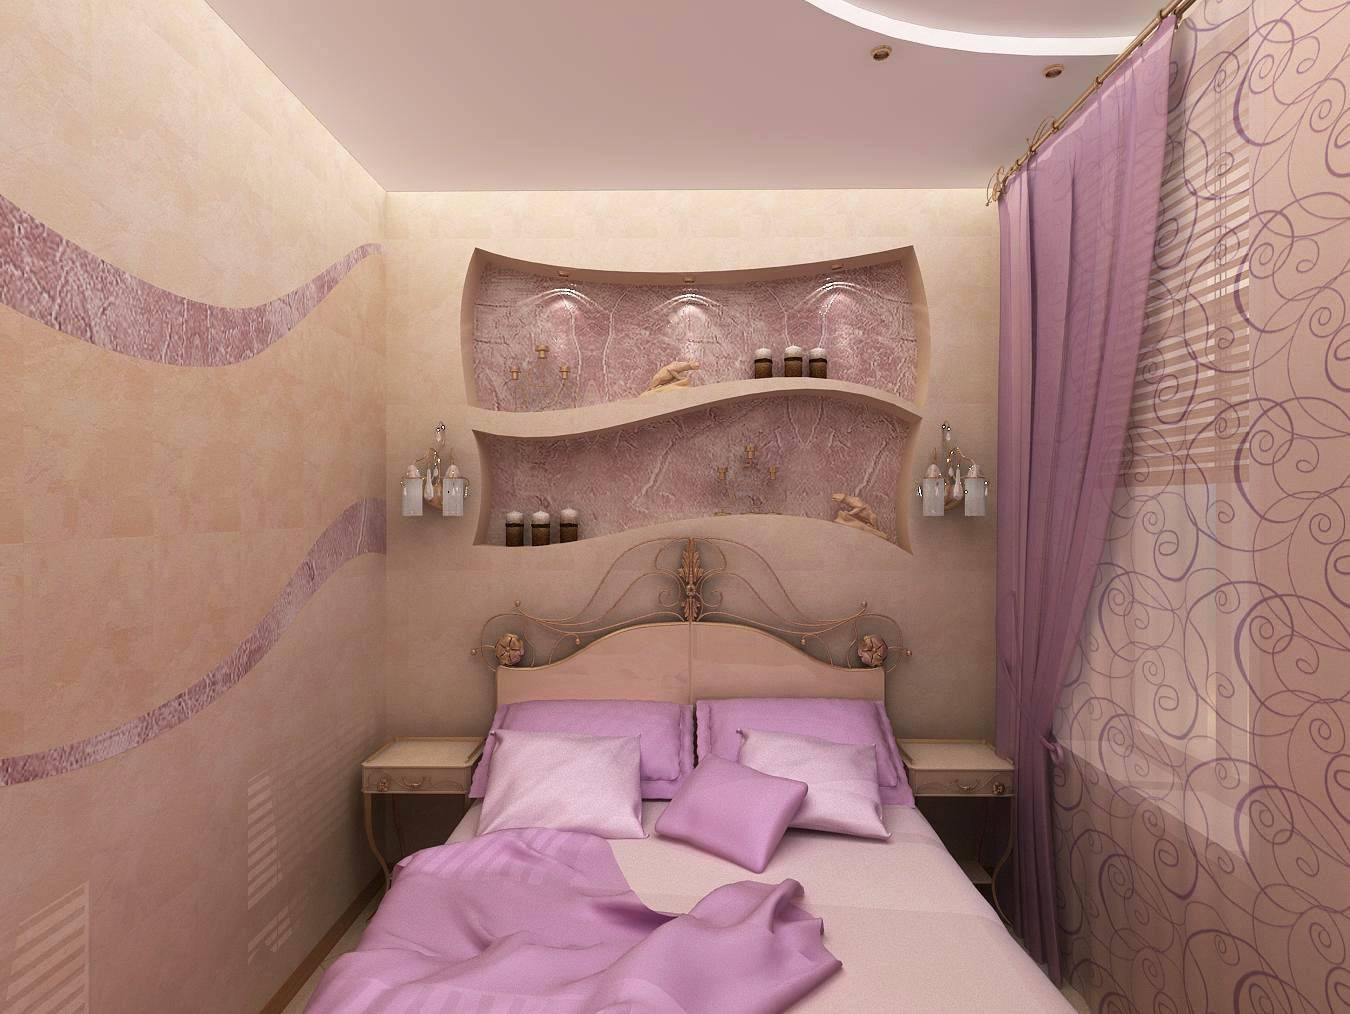 Ремонт спальни [47 фото] идей дизайна в спальной комнате, варианты современного евроремонта в маленькой квартире и спальне, бюджетный интерьер